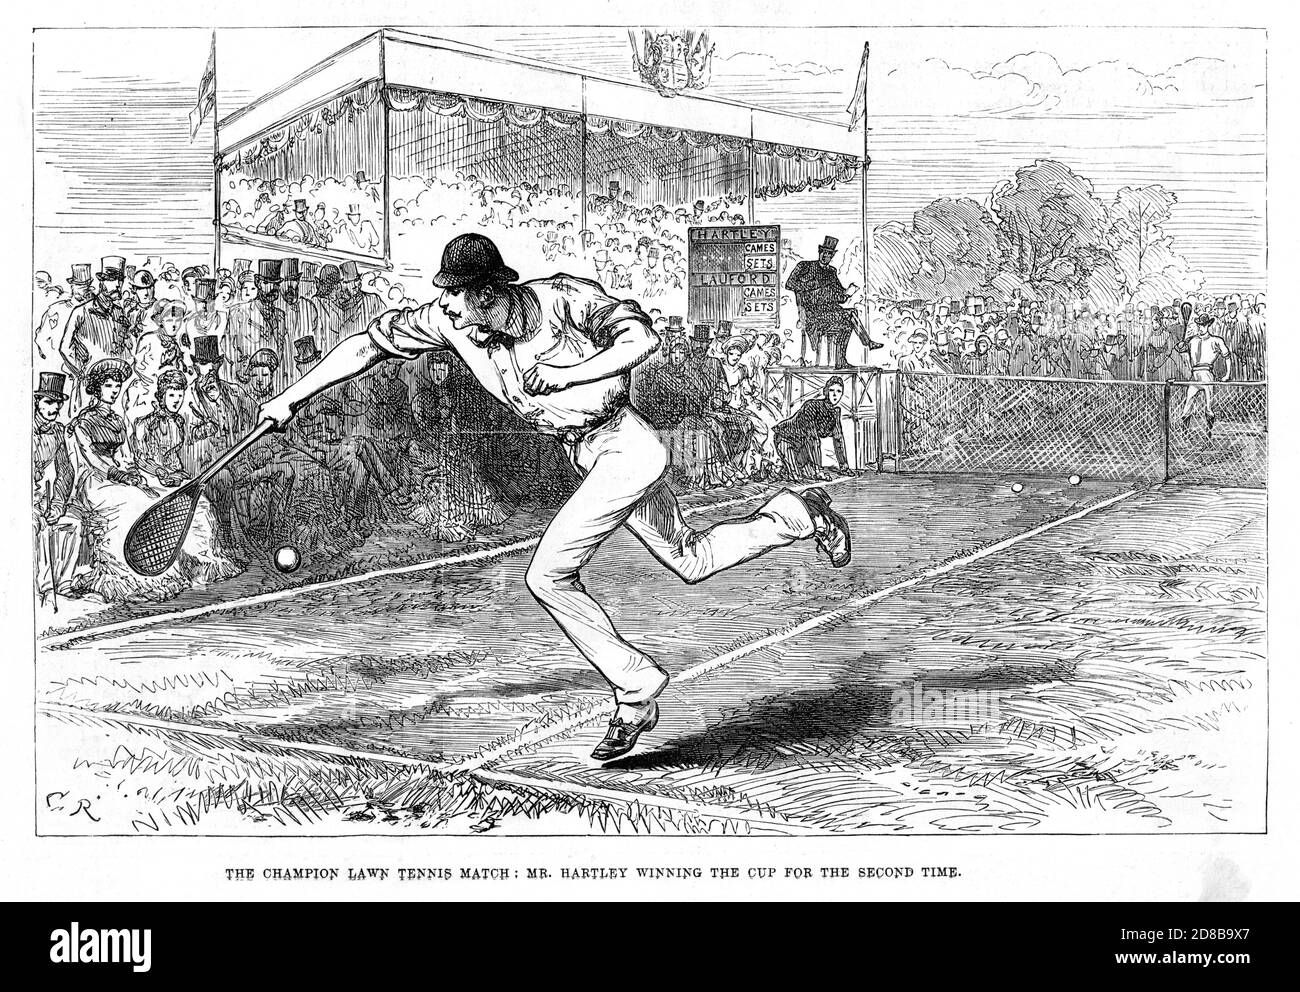 Herr Hartley gewinnt Wimbledon, 1880 Skizze der Aktion im Finale der Meisterschaft mit John Hartley Sieger zum zweiten Mal Stockfoto